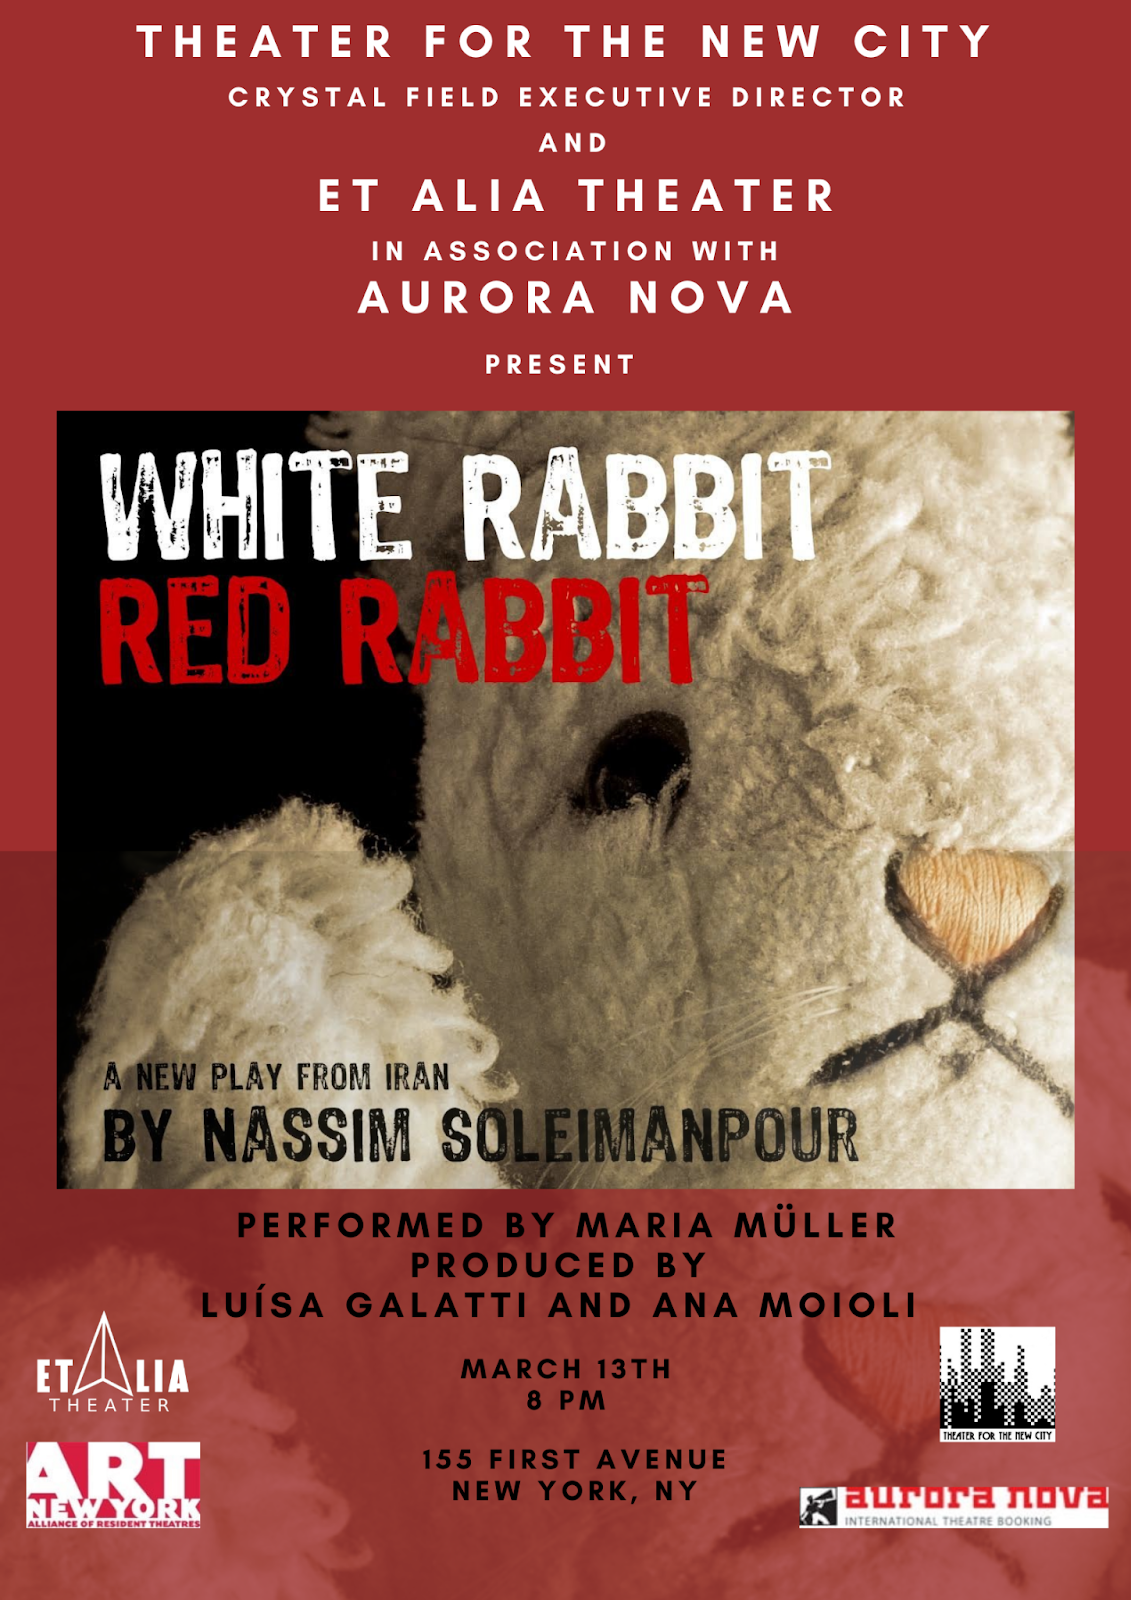 Flyer for White Rabbit Red Rabbit